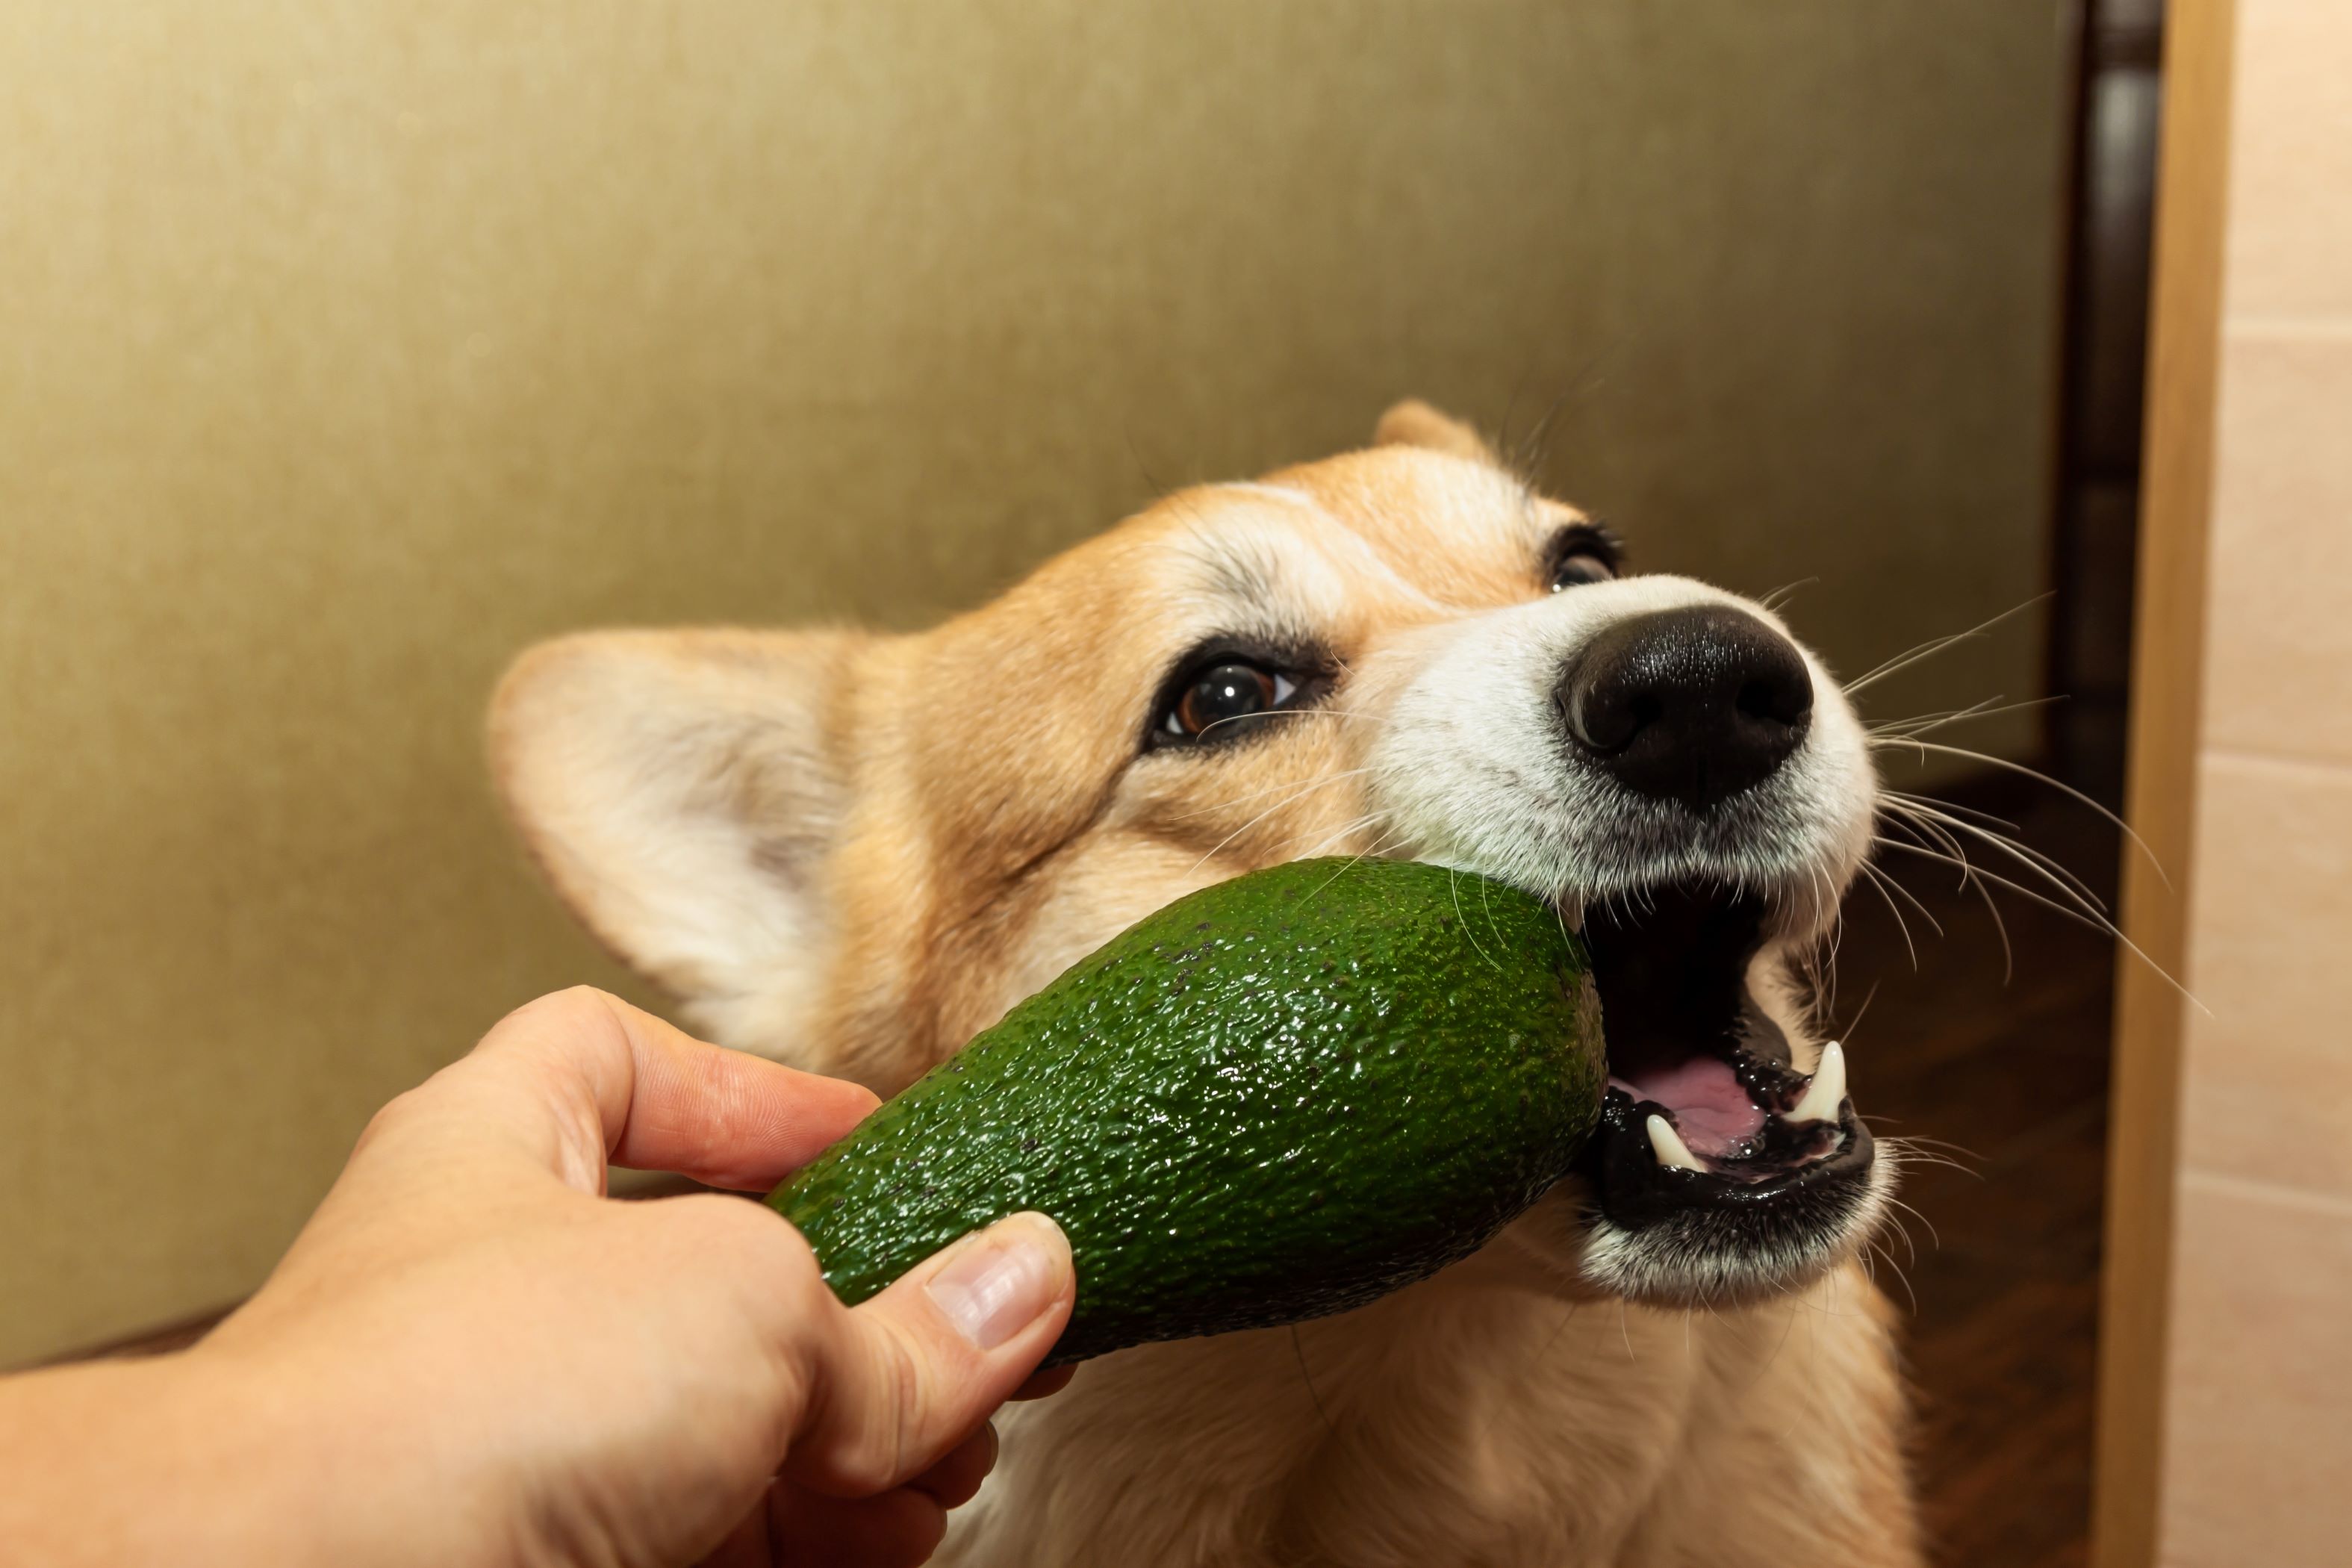 Corgi with an avocado